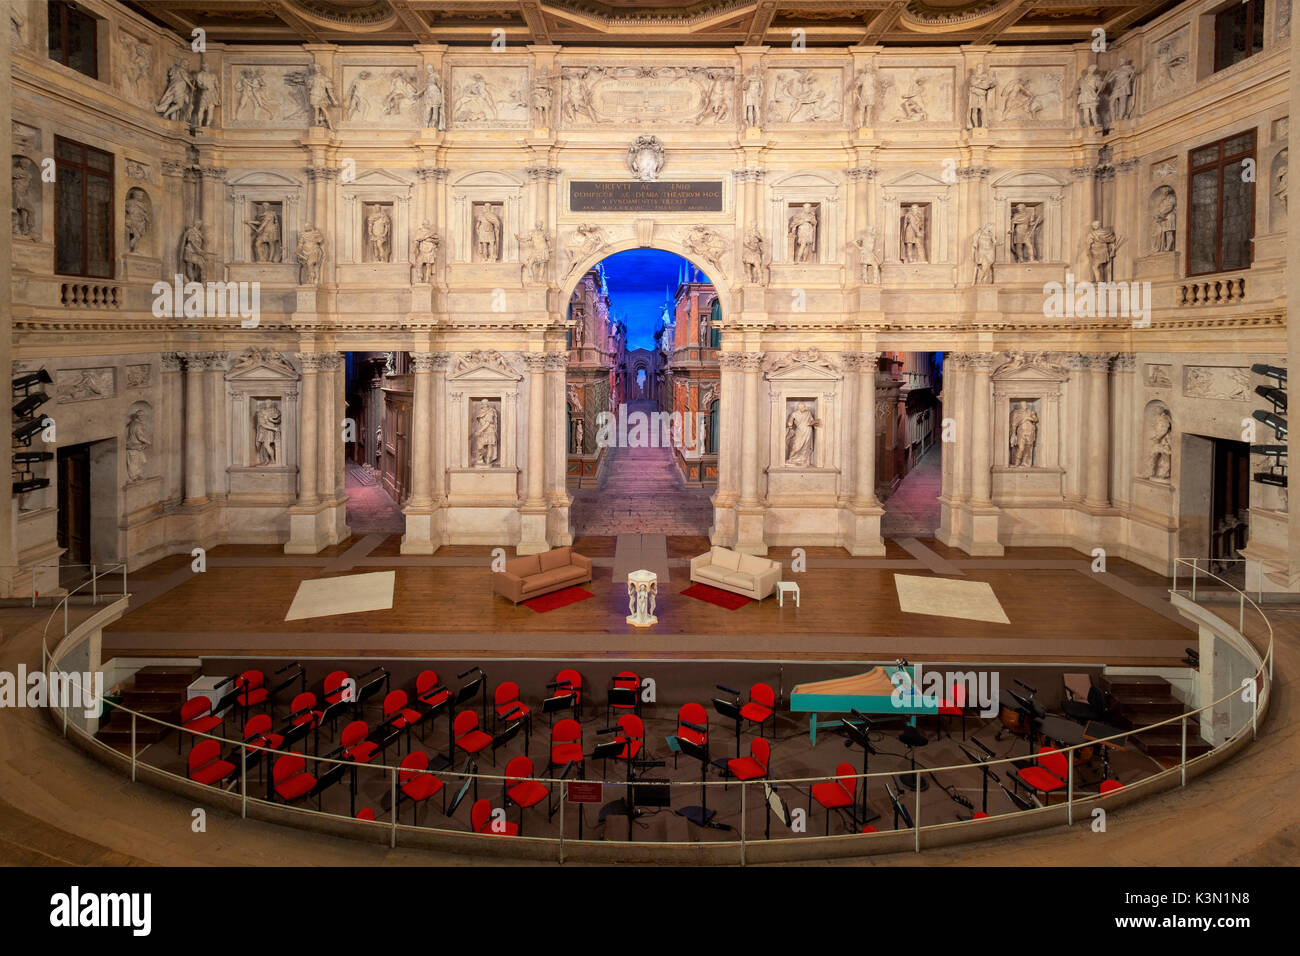 Teatro Olimpico in Vicenza, Italien Teatro Olimpico in Vicenza ist die erste überdachte Theater der Welt und wurde von dem berühmten Renaissance Architekten Andrea Palladio entworfen Stockfoto